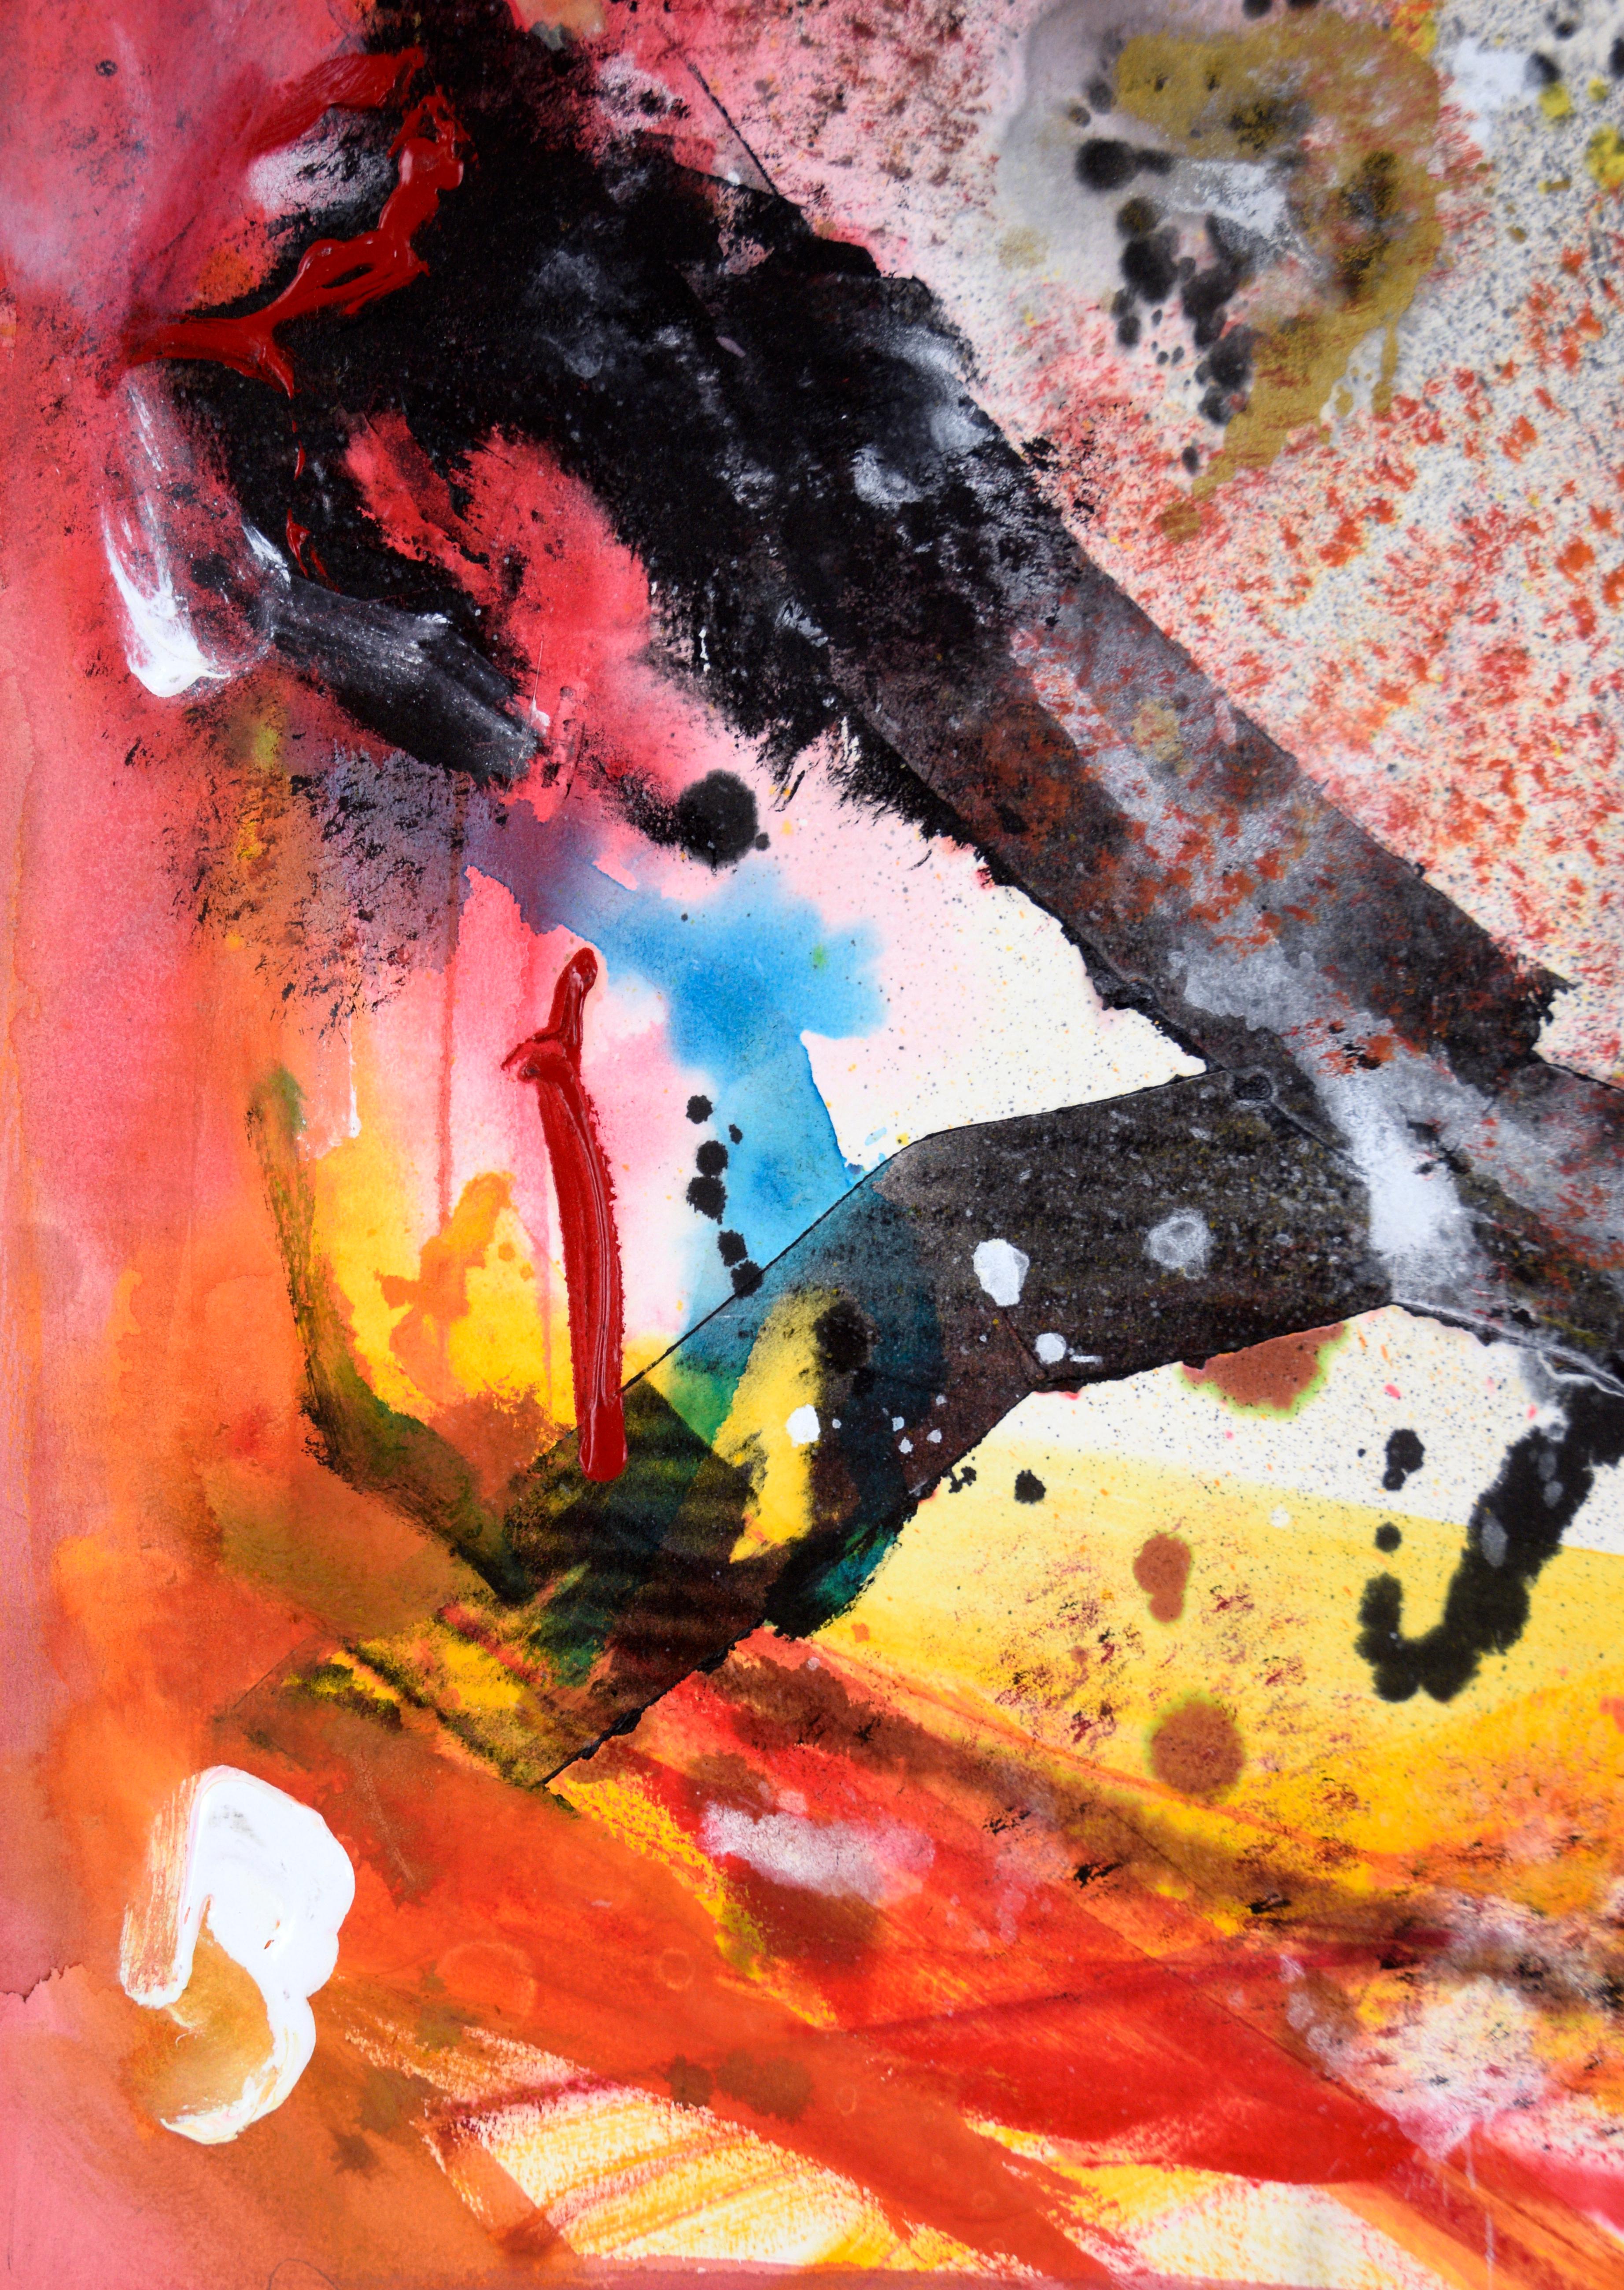 Abstrakter Impressionismus mit Abstraktionsismus

Ein lebhaftes abstraktes Gemälde in Rottönen mit Akzenten in Rabenschwarz, weißer Latexfarbe und schimmerndem Metallic-Gold des in Kalifornien lebenden Künstlers Ricardo de Silva